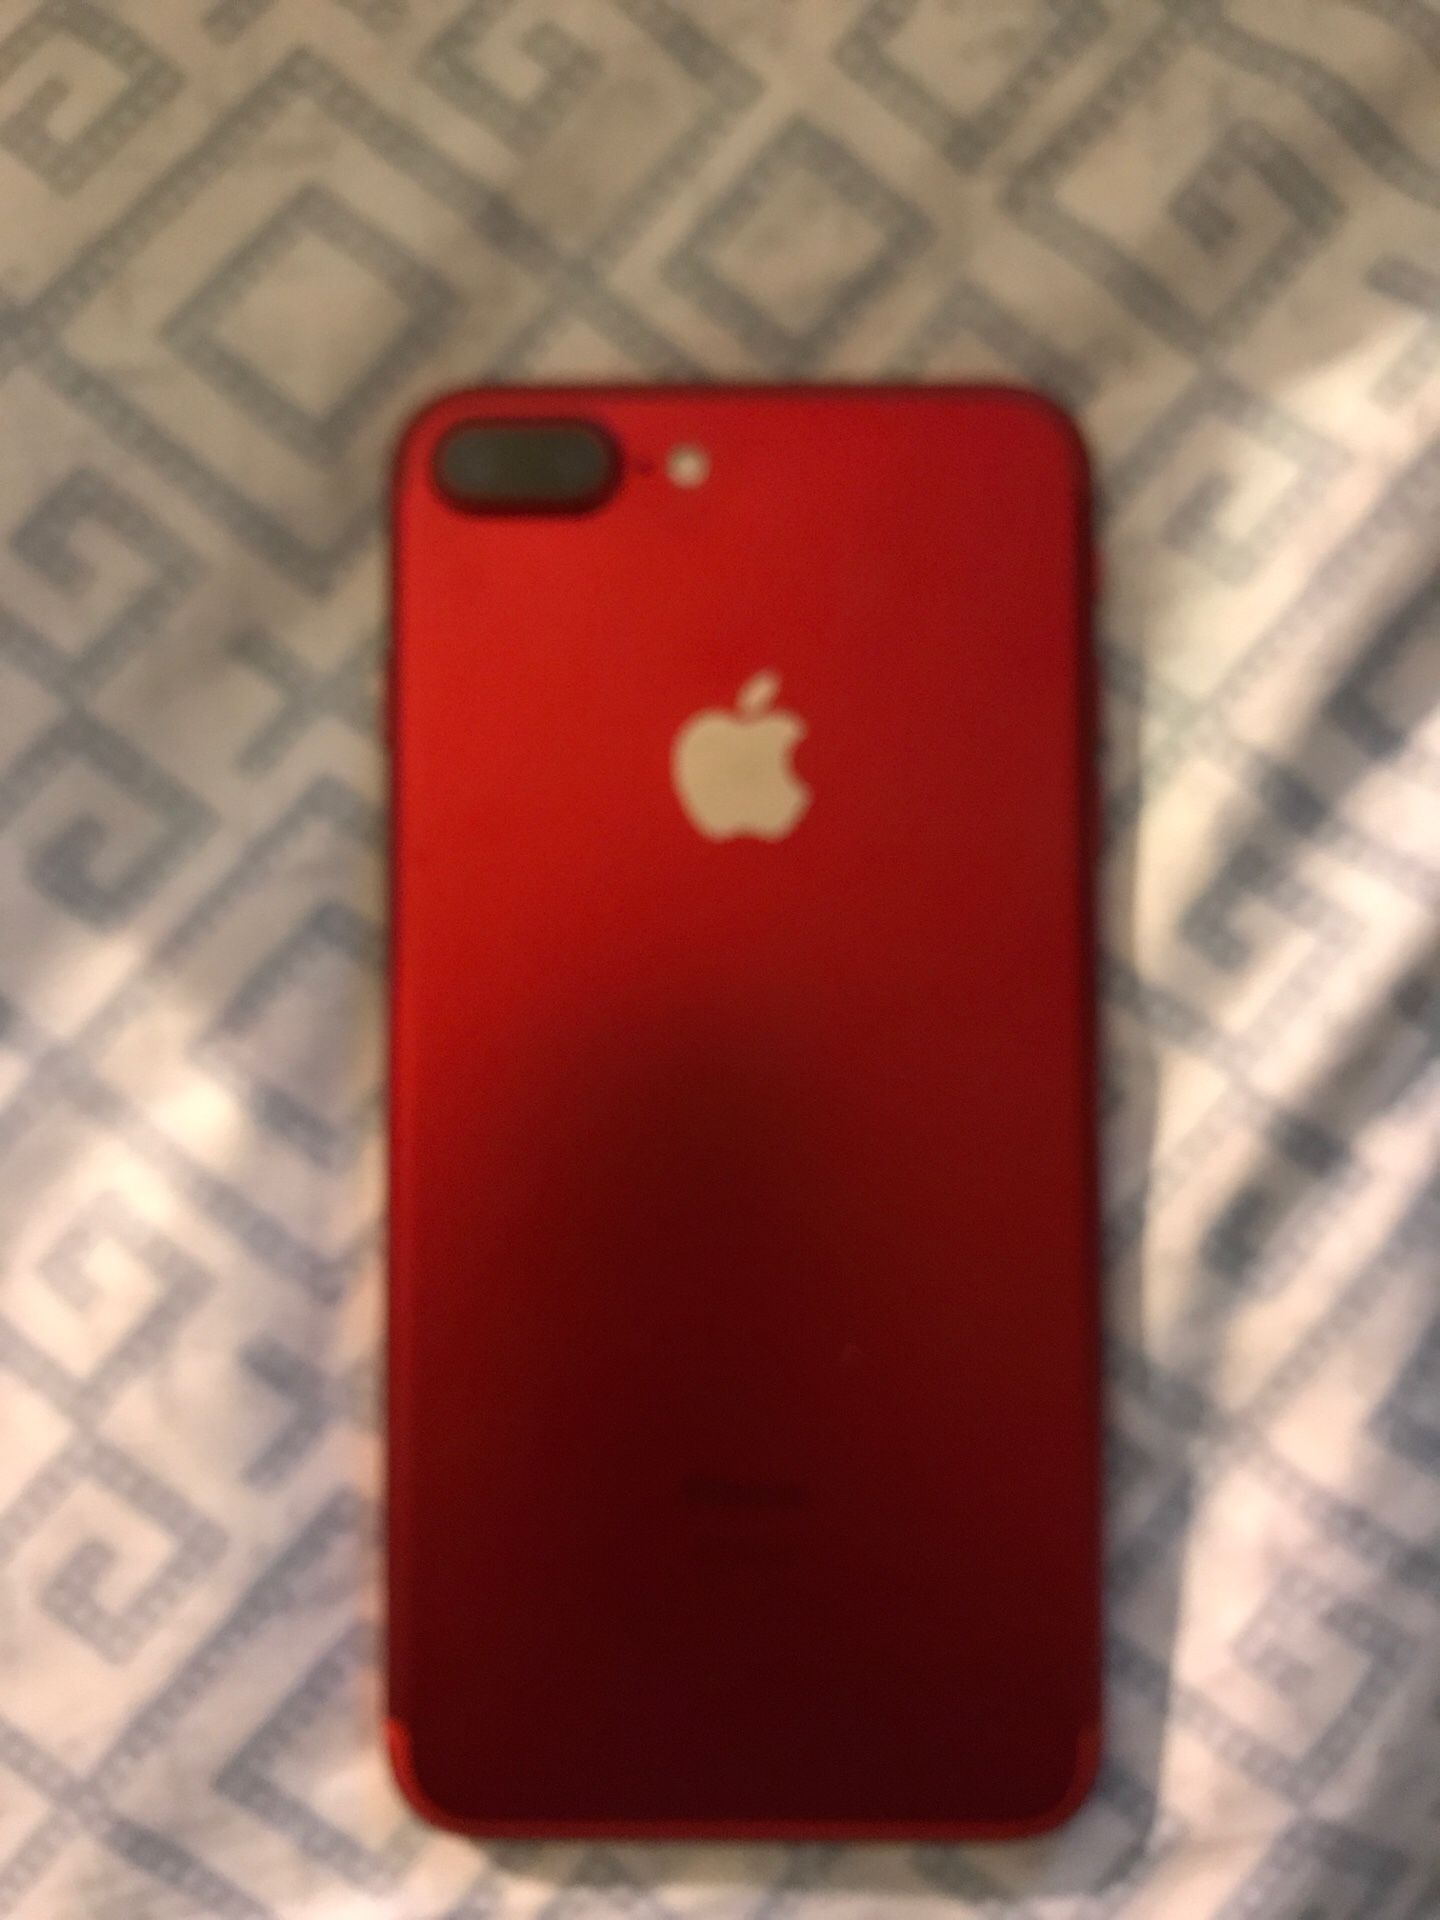 iPhone 7 Plus (red)